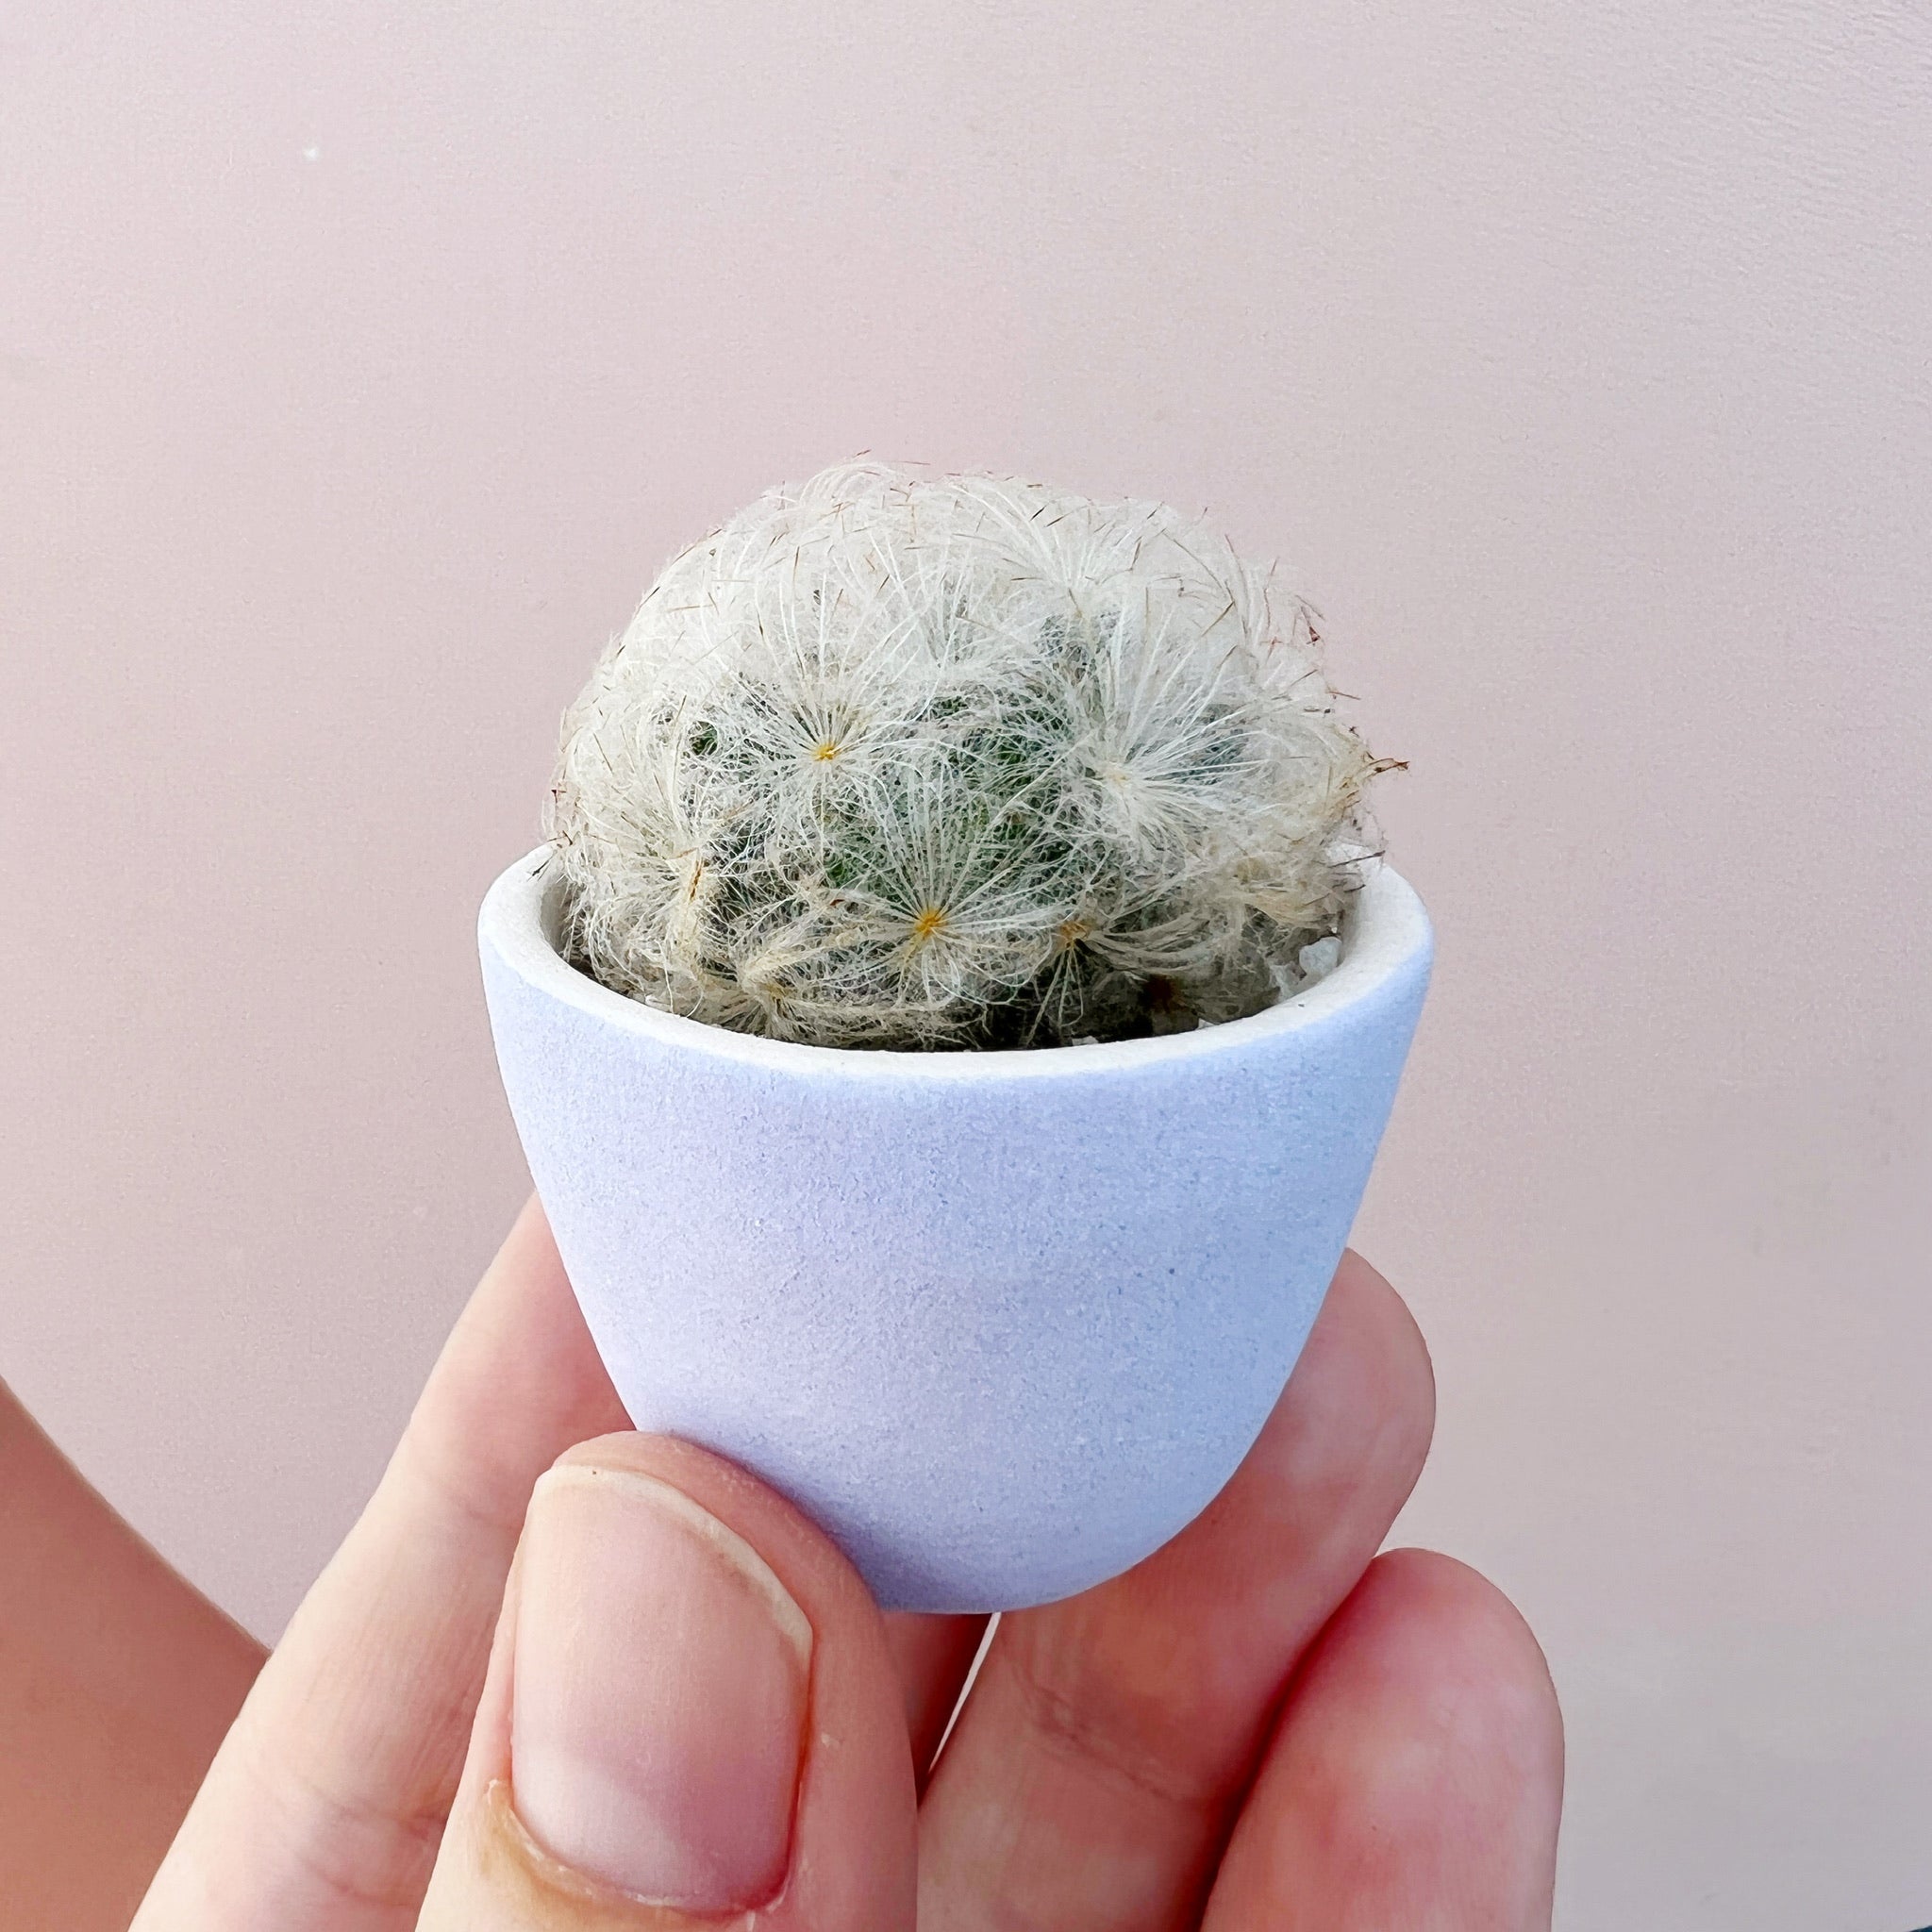 SURPRISE! Mini Cactus Garden Kit + Handmade Ceramic Planter